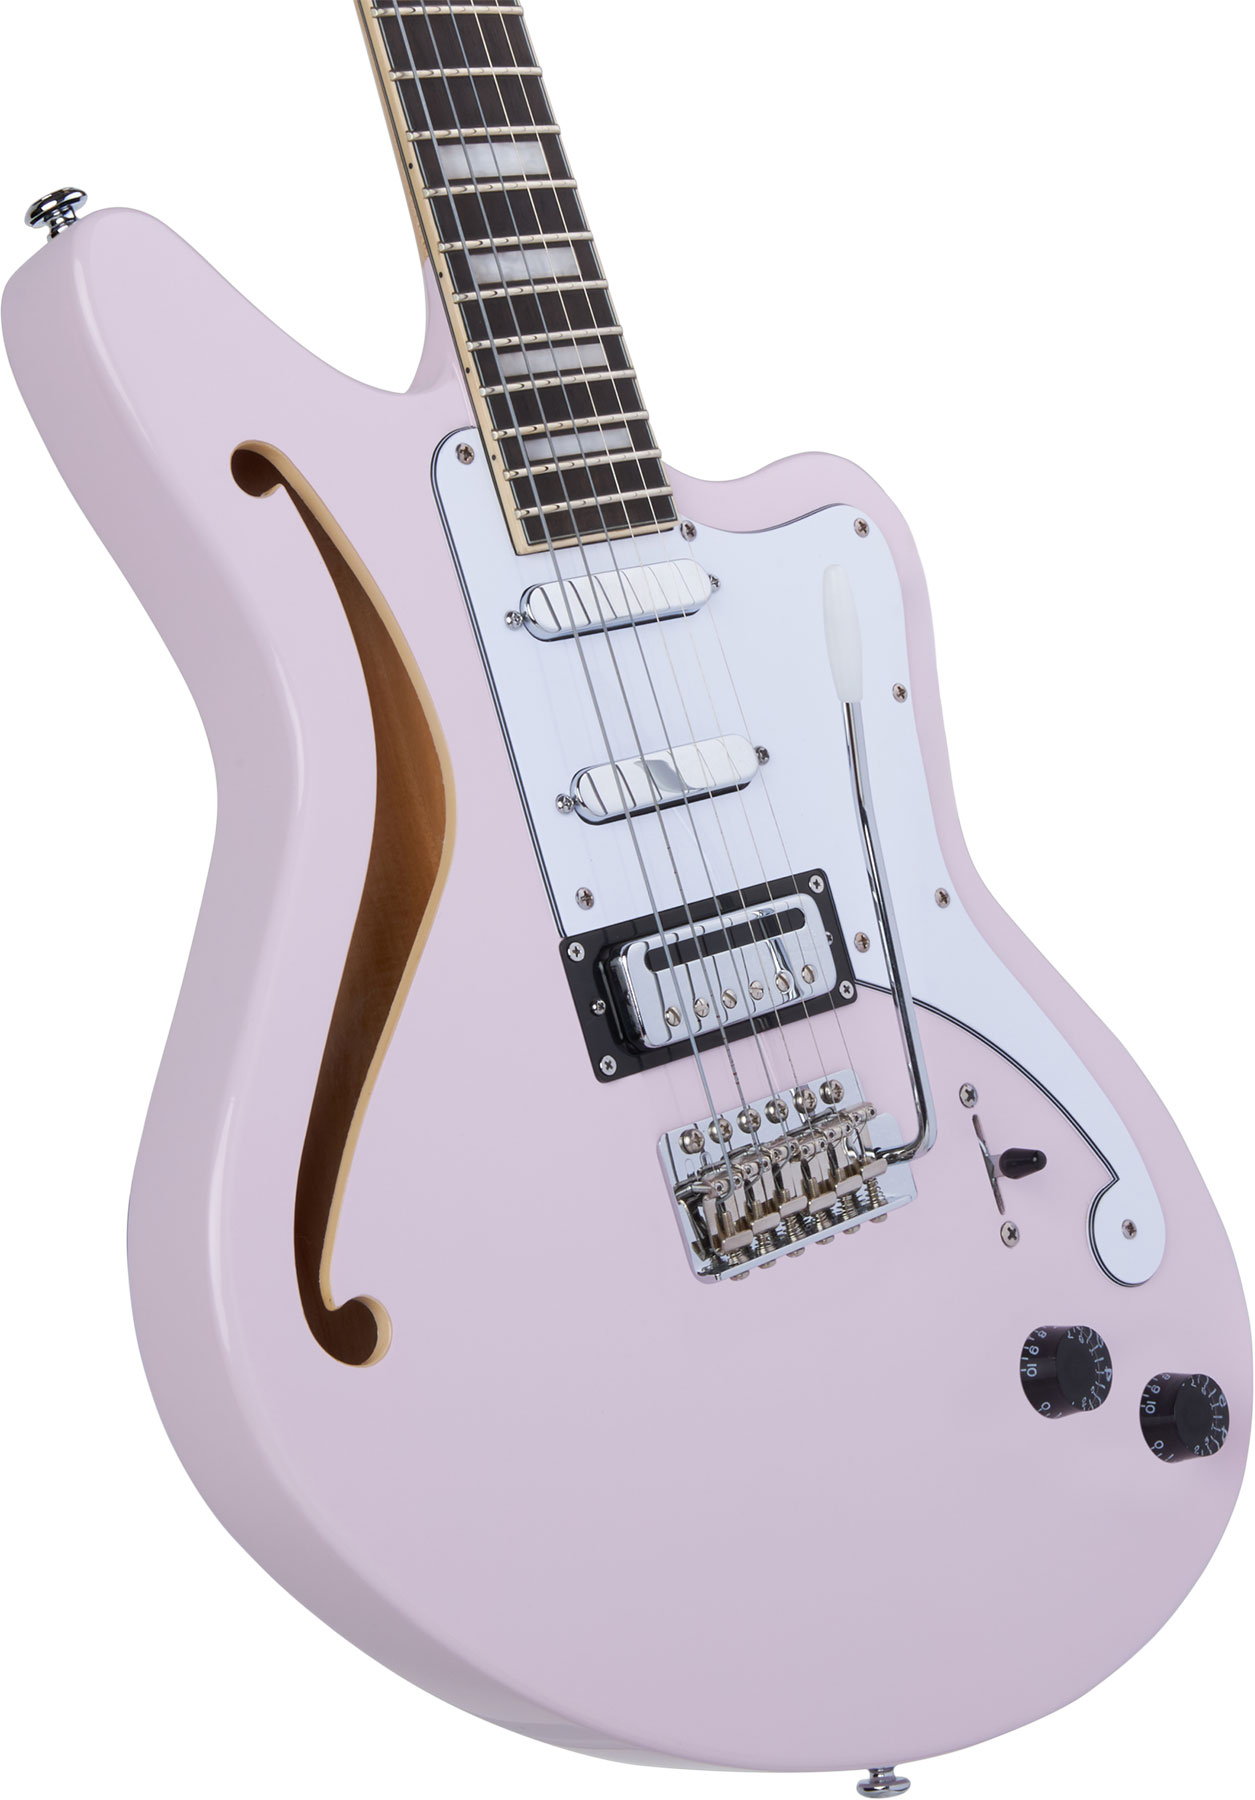 D'angelico Bedford Sh Premier Hss Trem Ova - Shell Pink - Guitare Électrique 1/2 Caisse - Variation 3